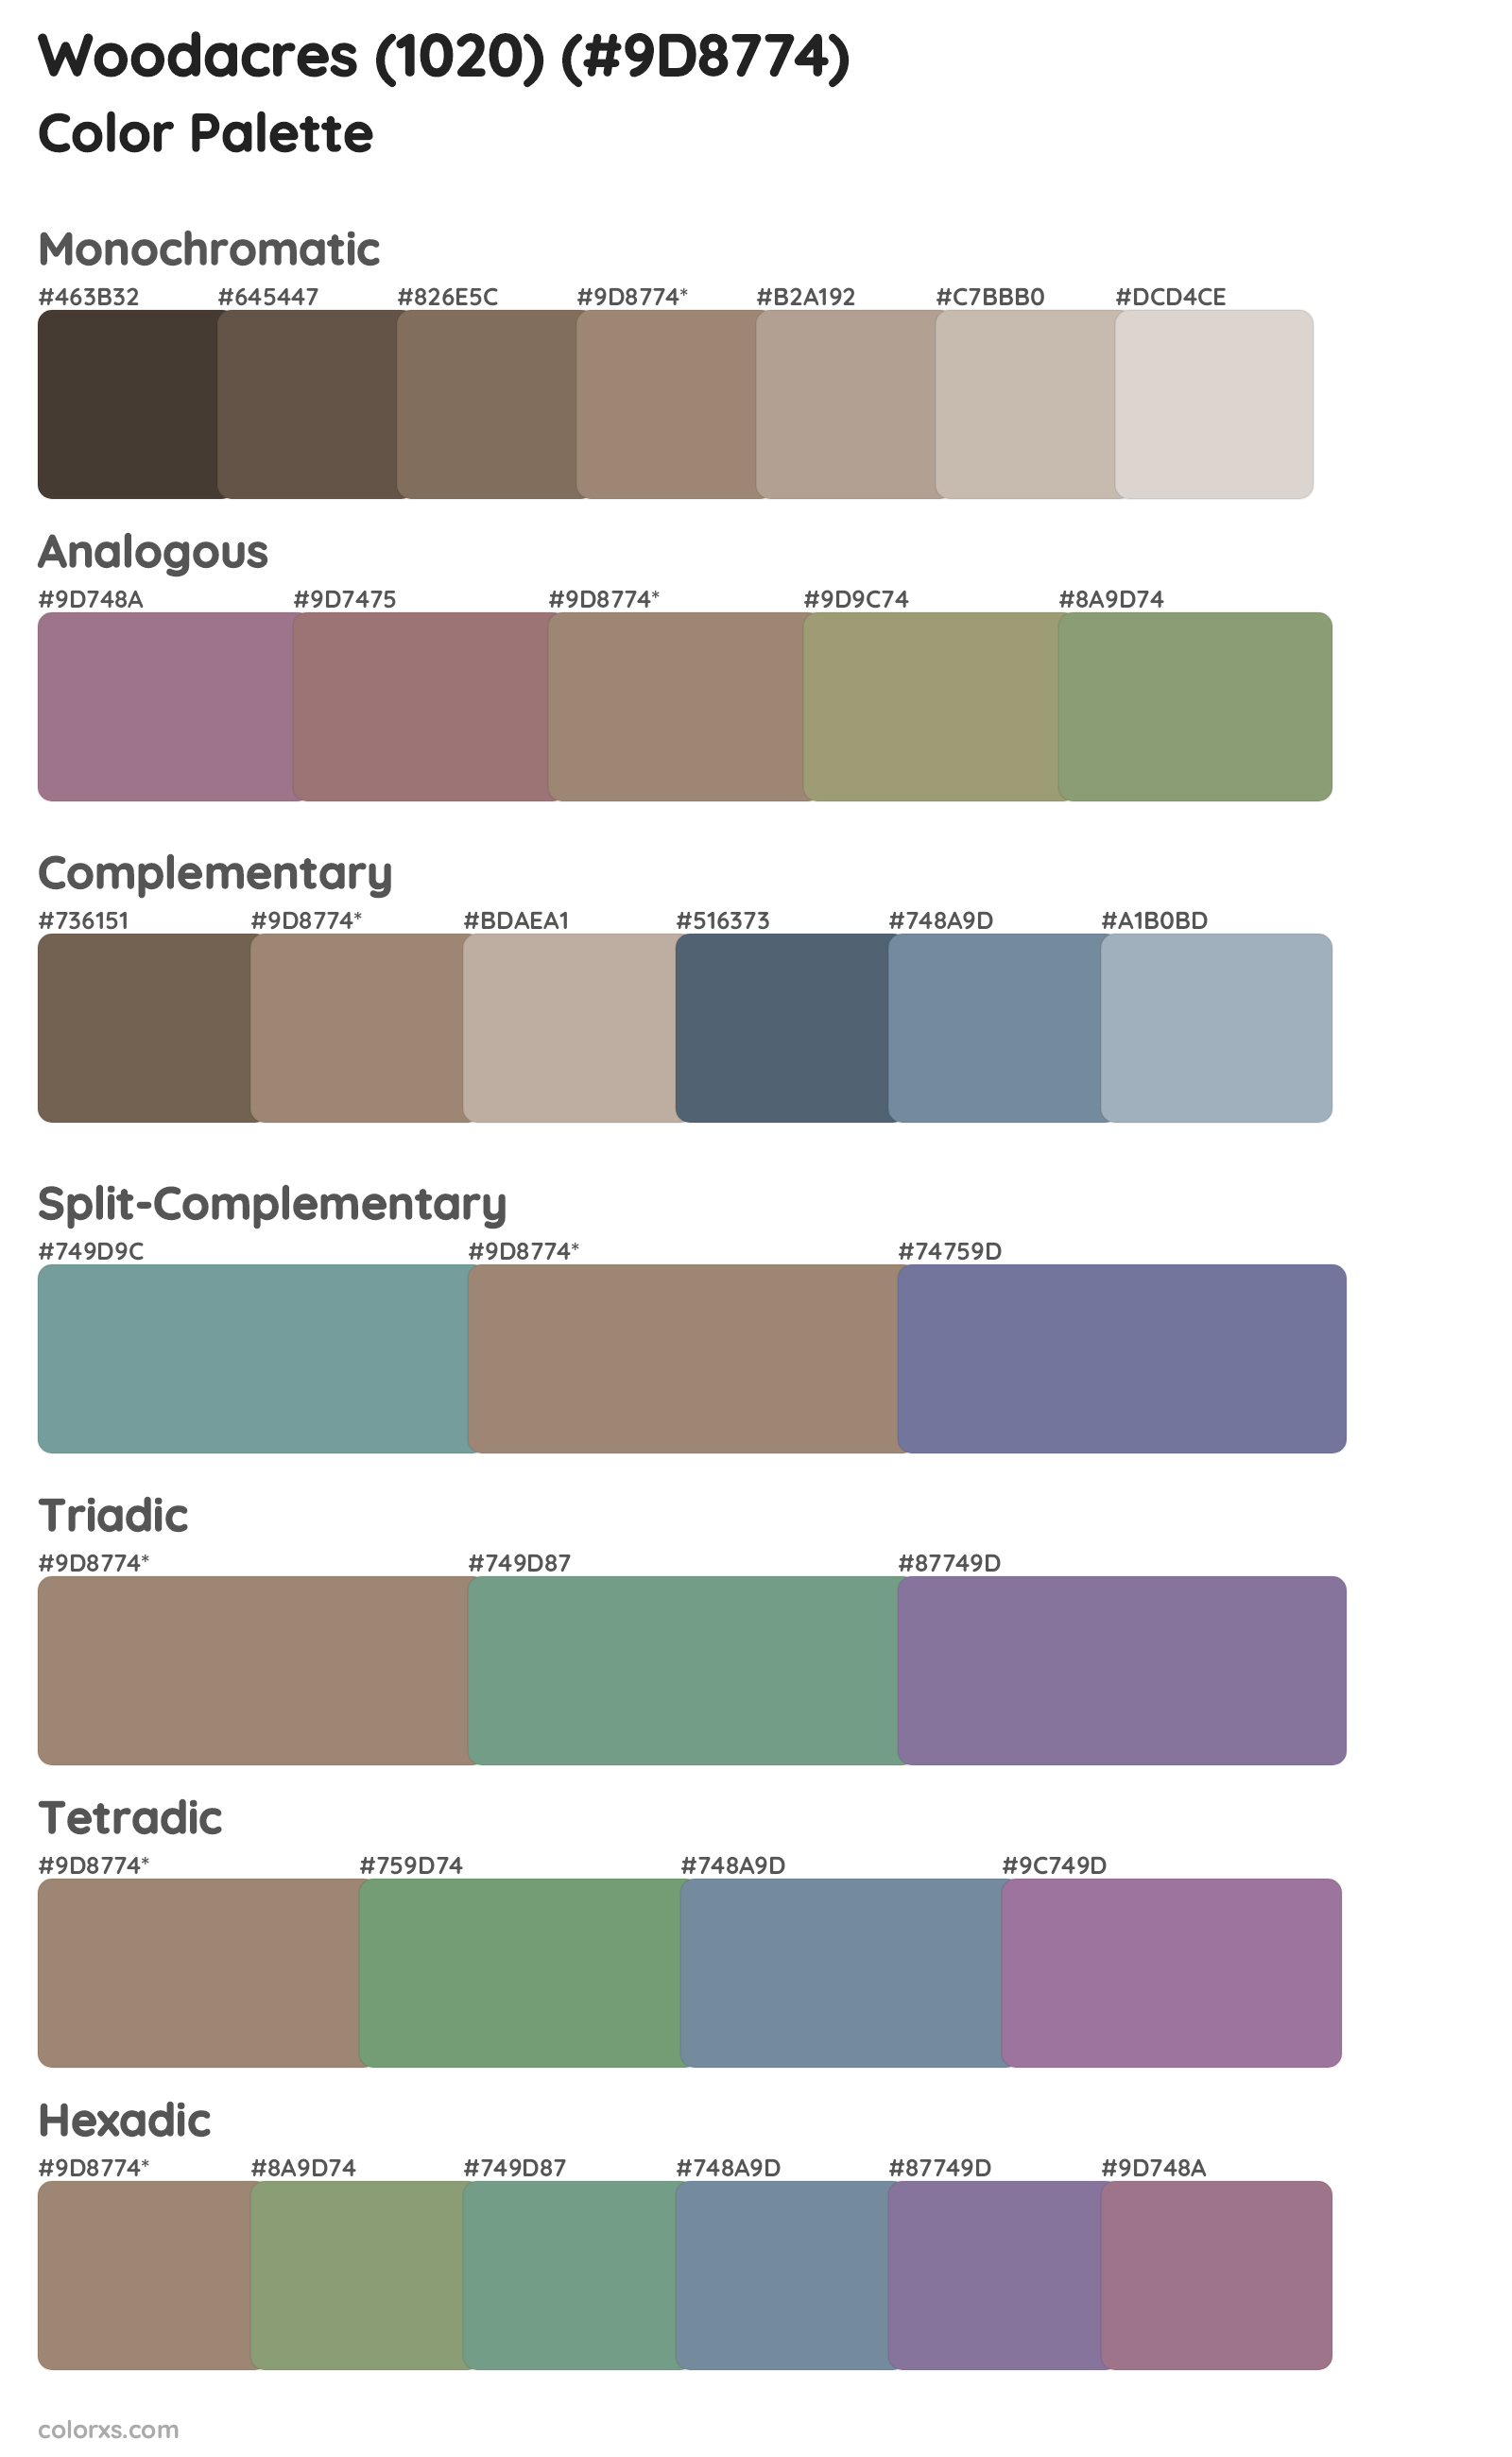 Woodacres (1020) Color Scheme Palettes